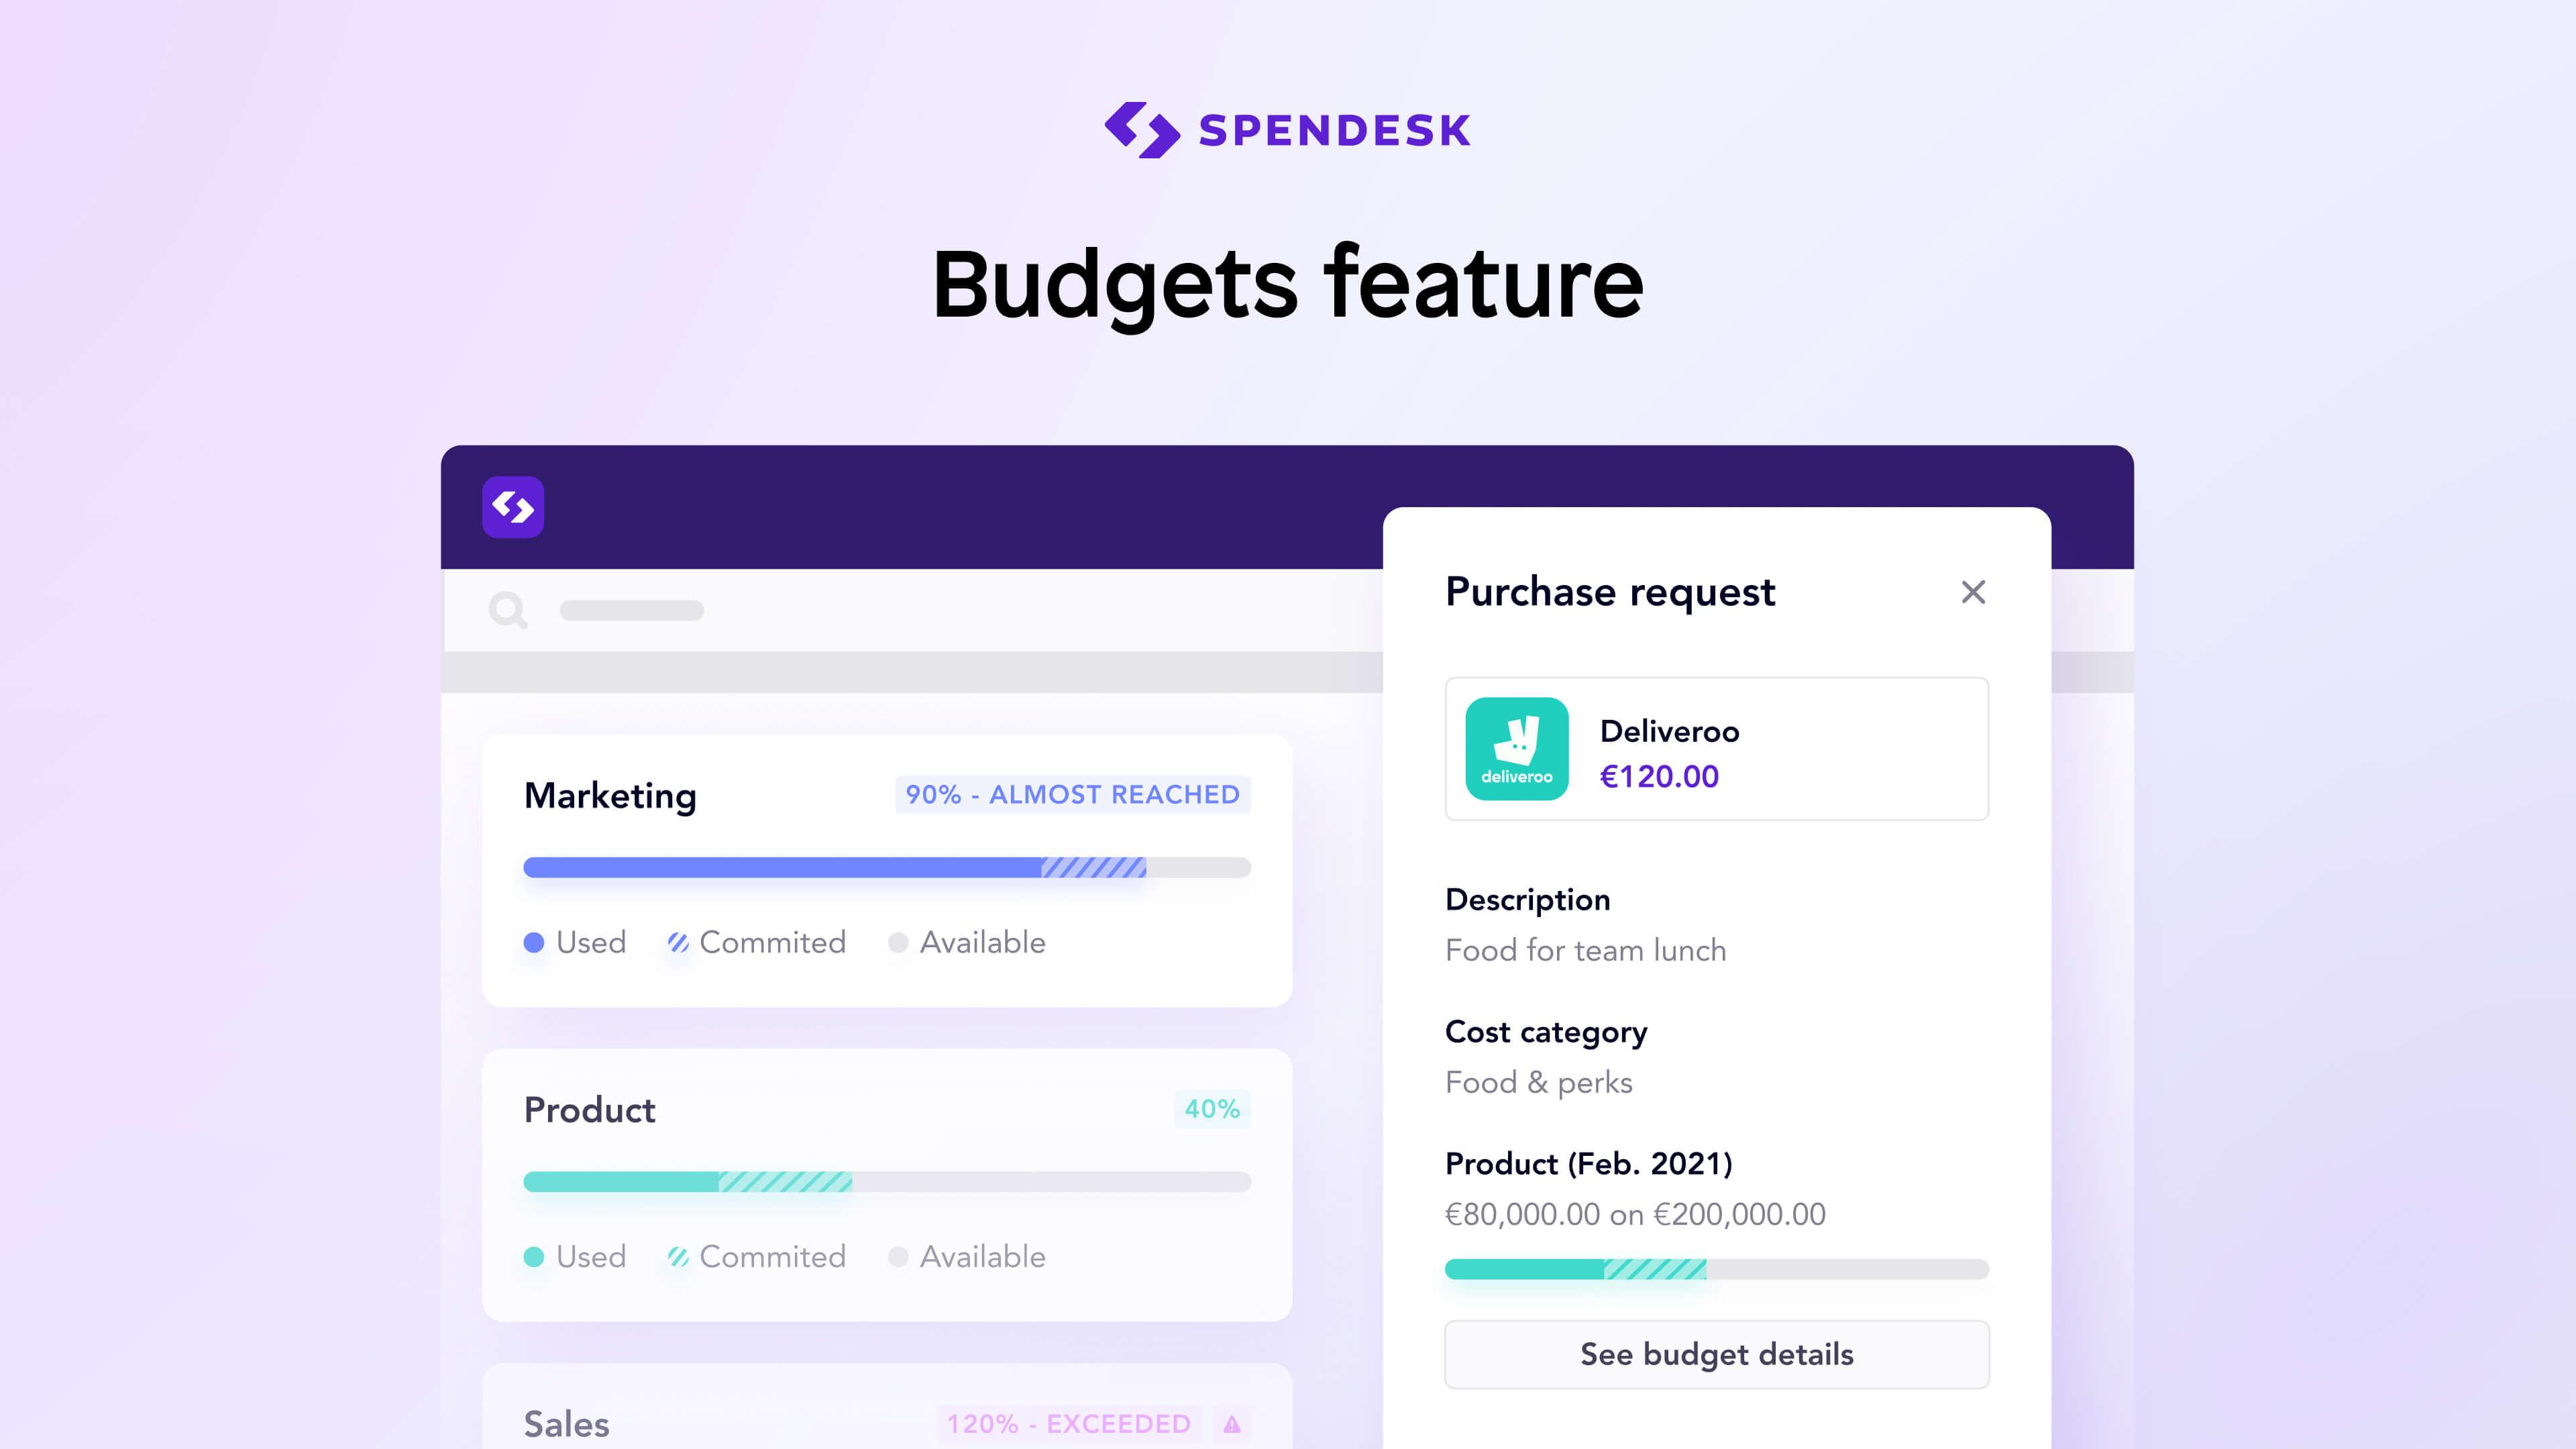 Spendesk - Adjust budgets based on live information